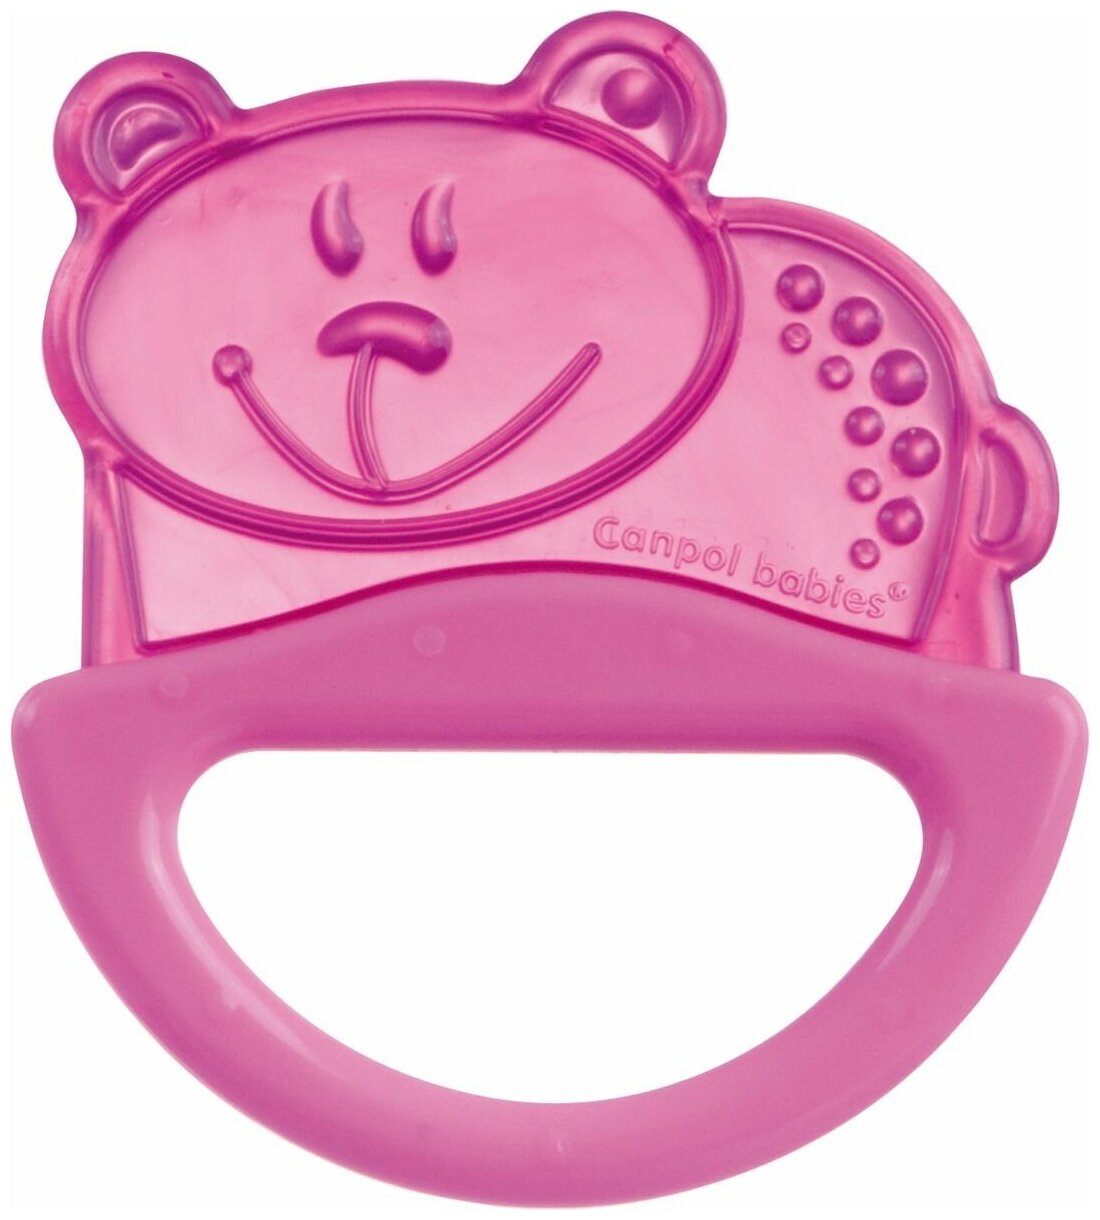 Погремушка Canpol babies с эластичным прорезывателем, 0+, цвет: розовый, форма: мишка